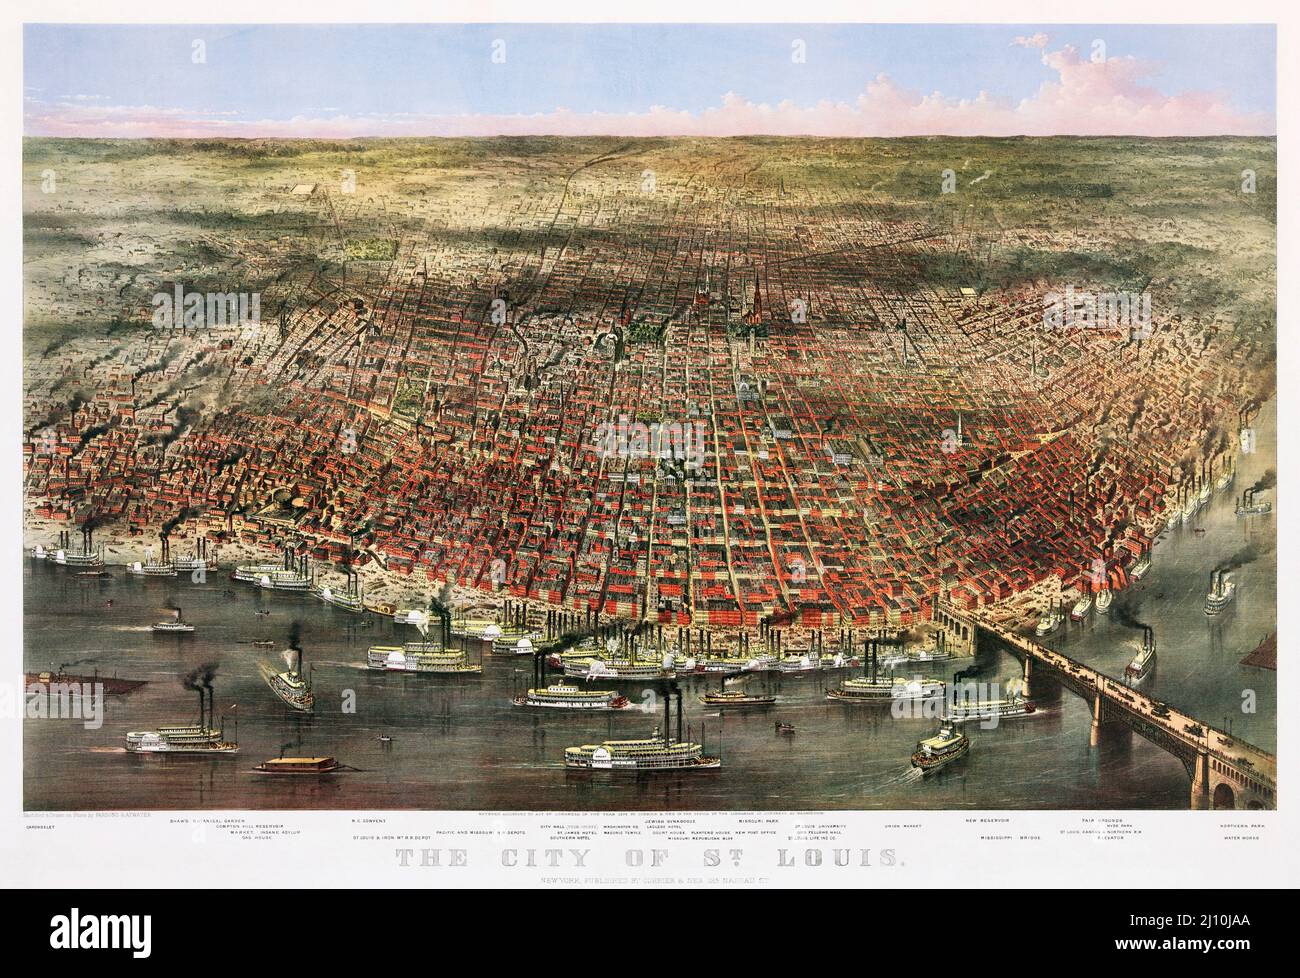 Die Stadt St. Louis, Missouri, Vereinigte Staaten von Amerika. Ein Luftpanorama der Stadt, veröffentlicht von Currier & Ives im Jahr 1874. Der Chromolithograph wurde in der Blütezeit der Dampfschiffe des Mississippi-Flusses hergestellt, die auf dem Bild zu sehen sind. Stockfoto